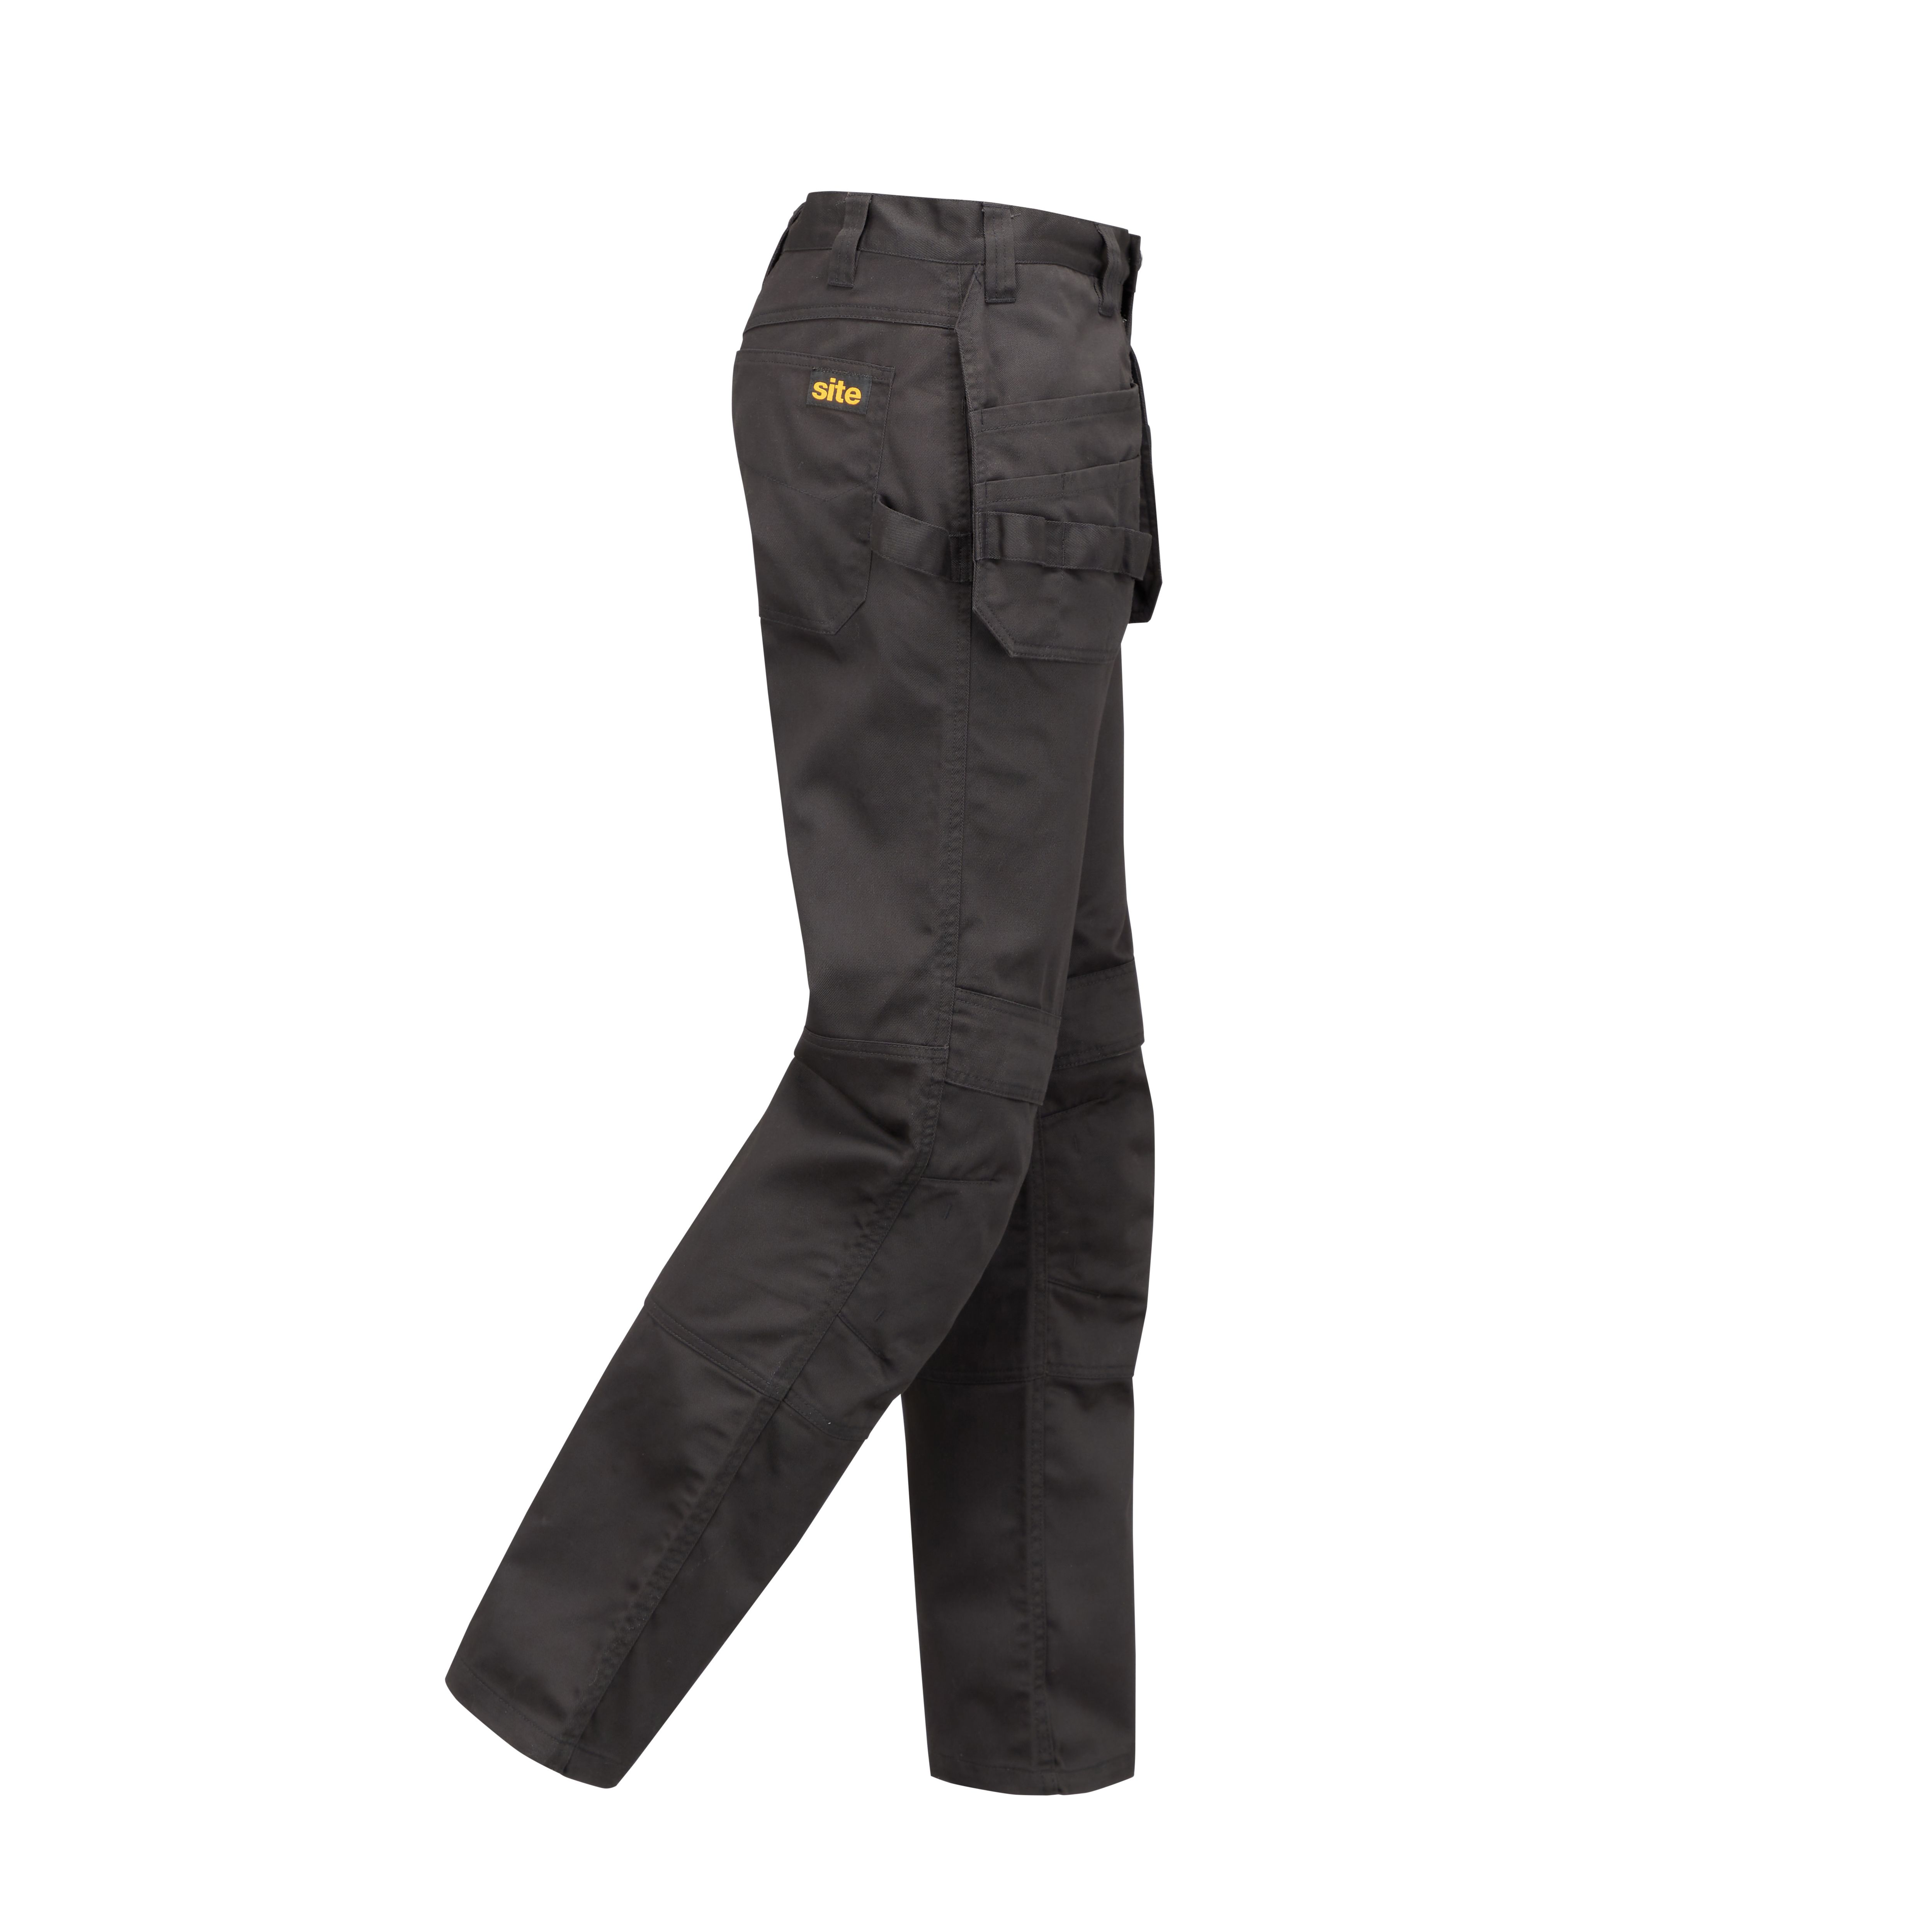 Site Sember Black Men's Holster pocket trousers, W36